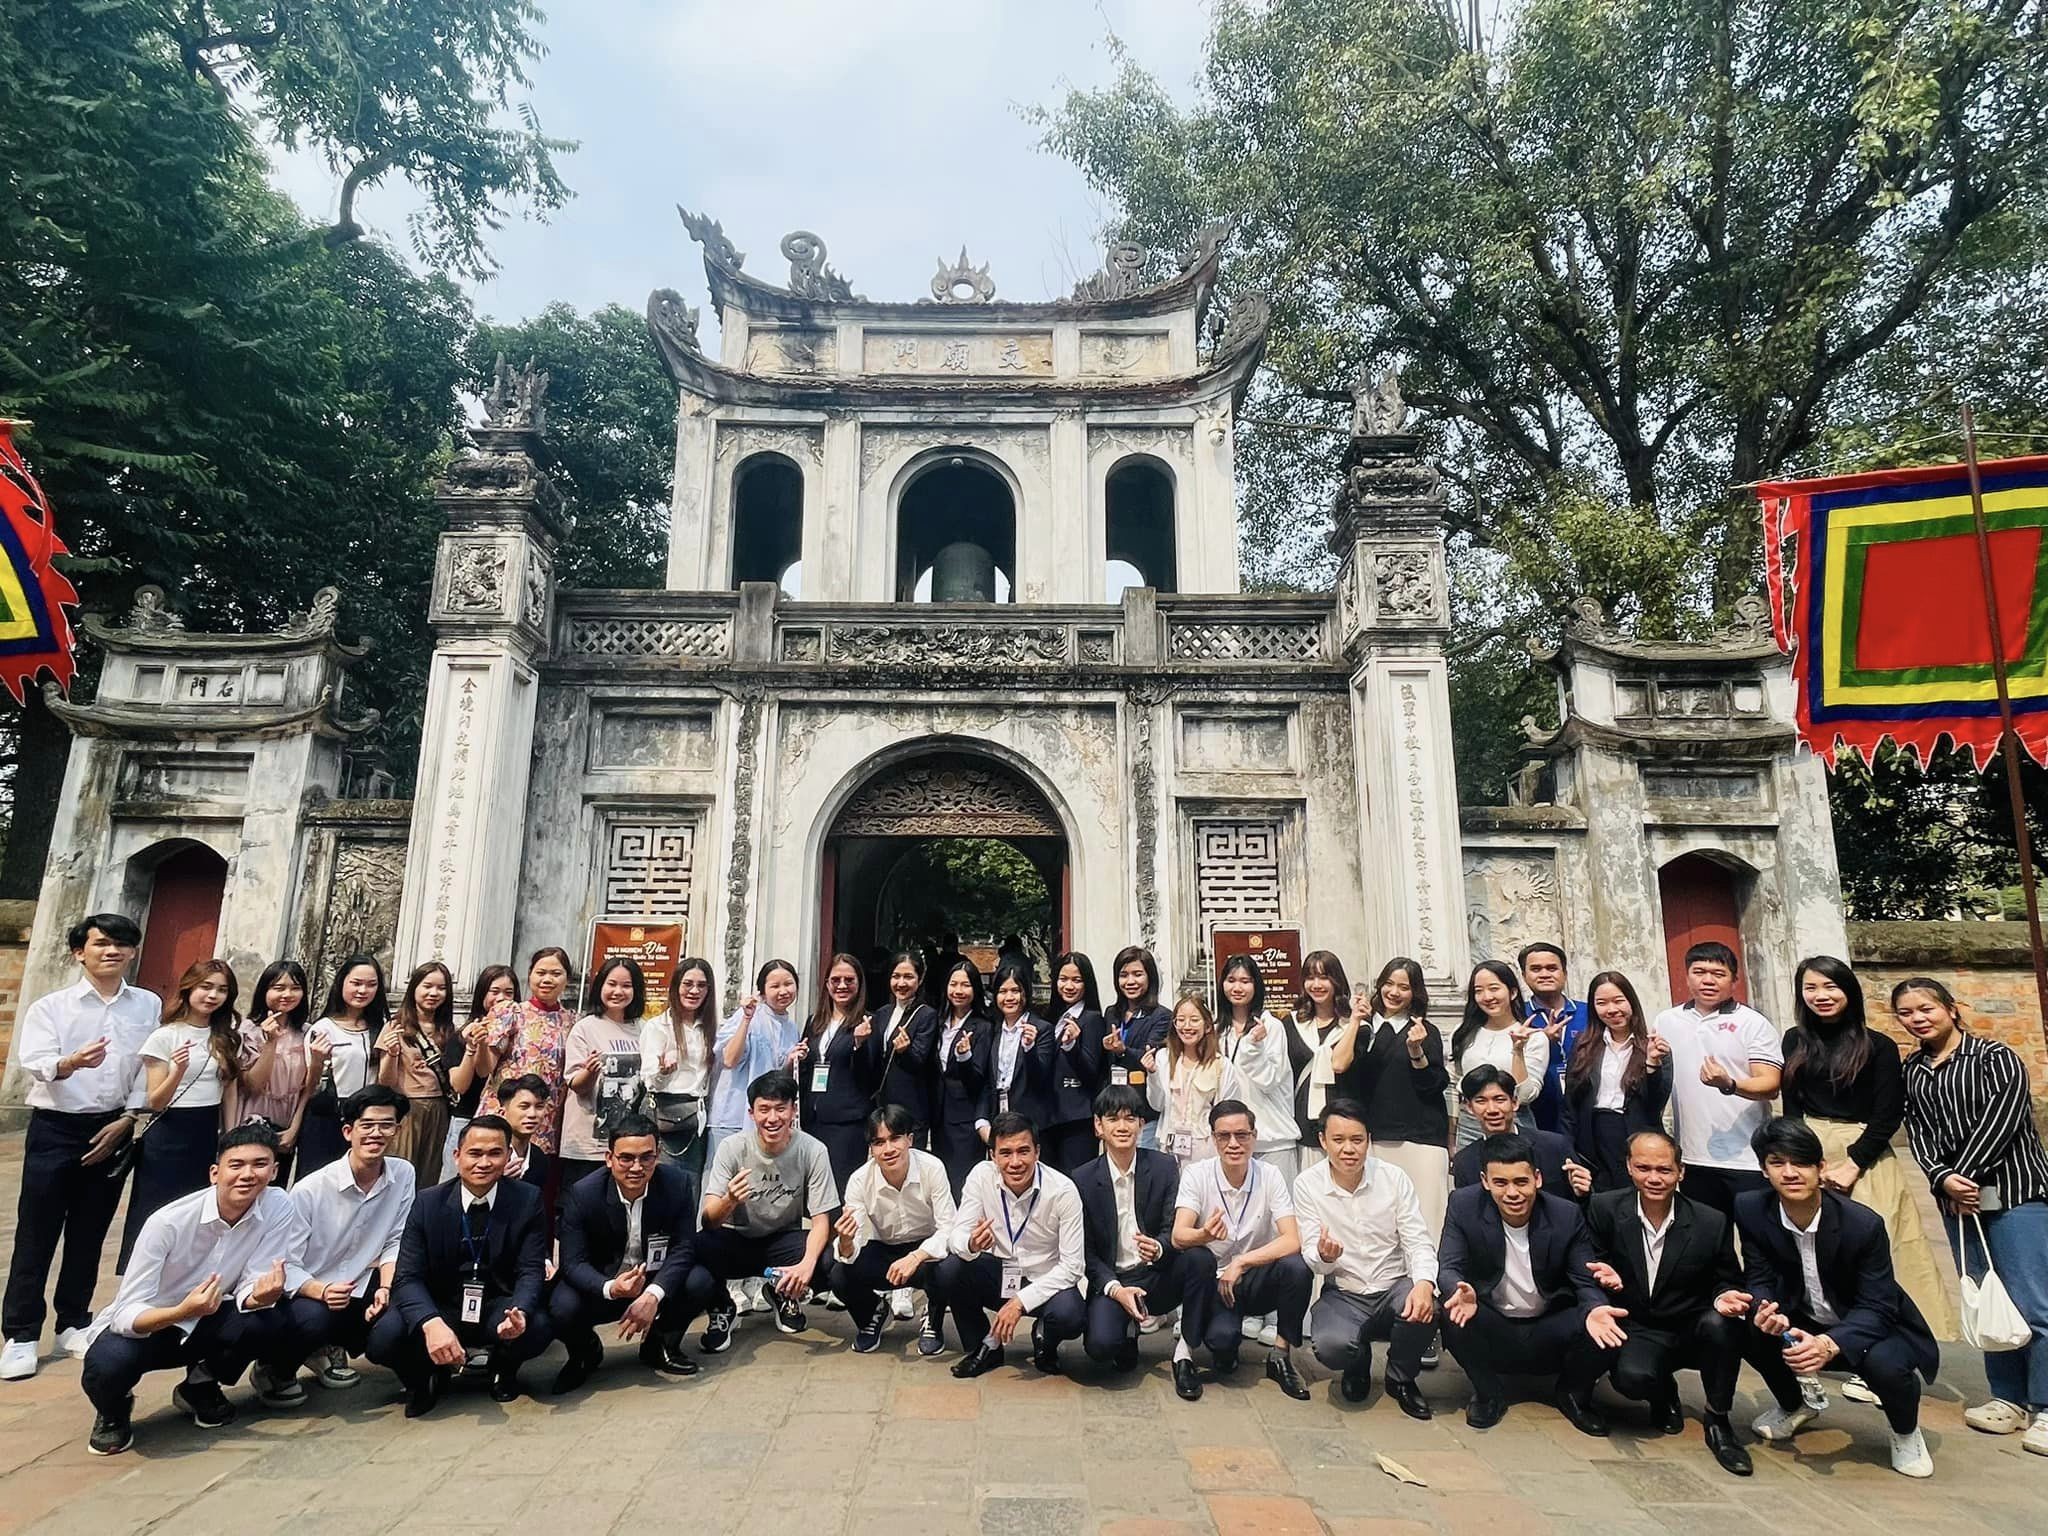 Lưu học sinh Lào, Campuchia tìm hiểu lịch sử, trải nghiệm văn hóa Việt Nam